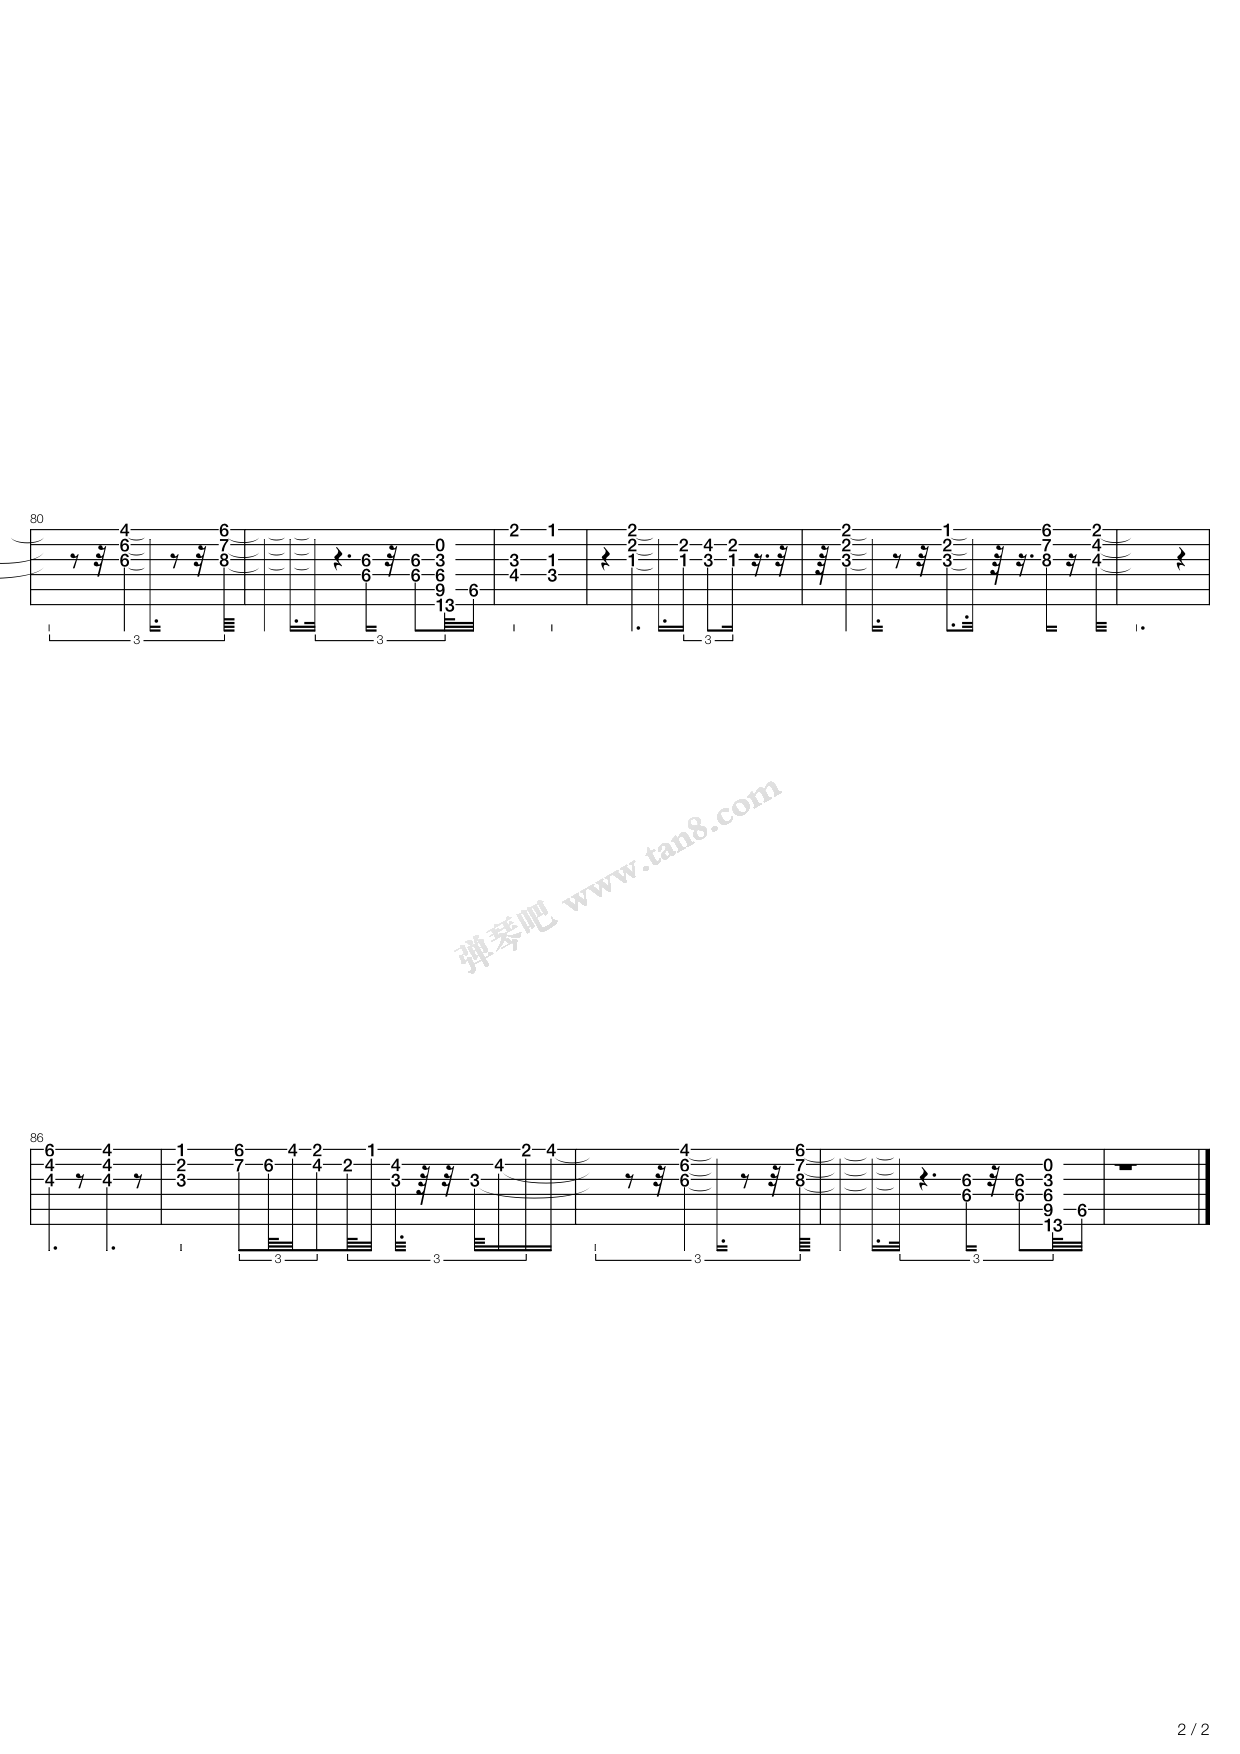 飞机场-徐良双手简谱预览3-钢琴谱文件（五线谱、双手简谱、数字谱、Midi、PDF）免费下载